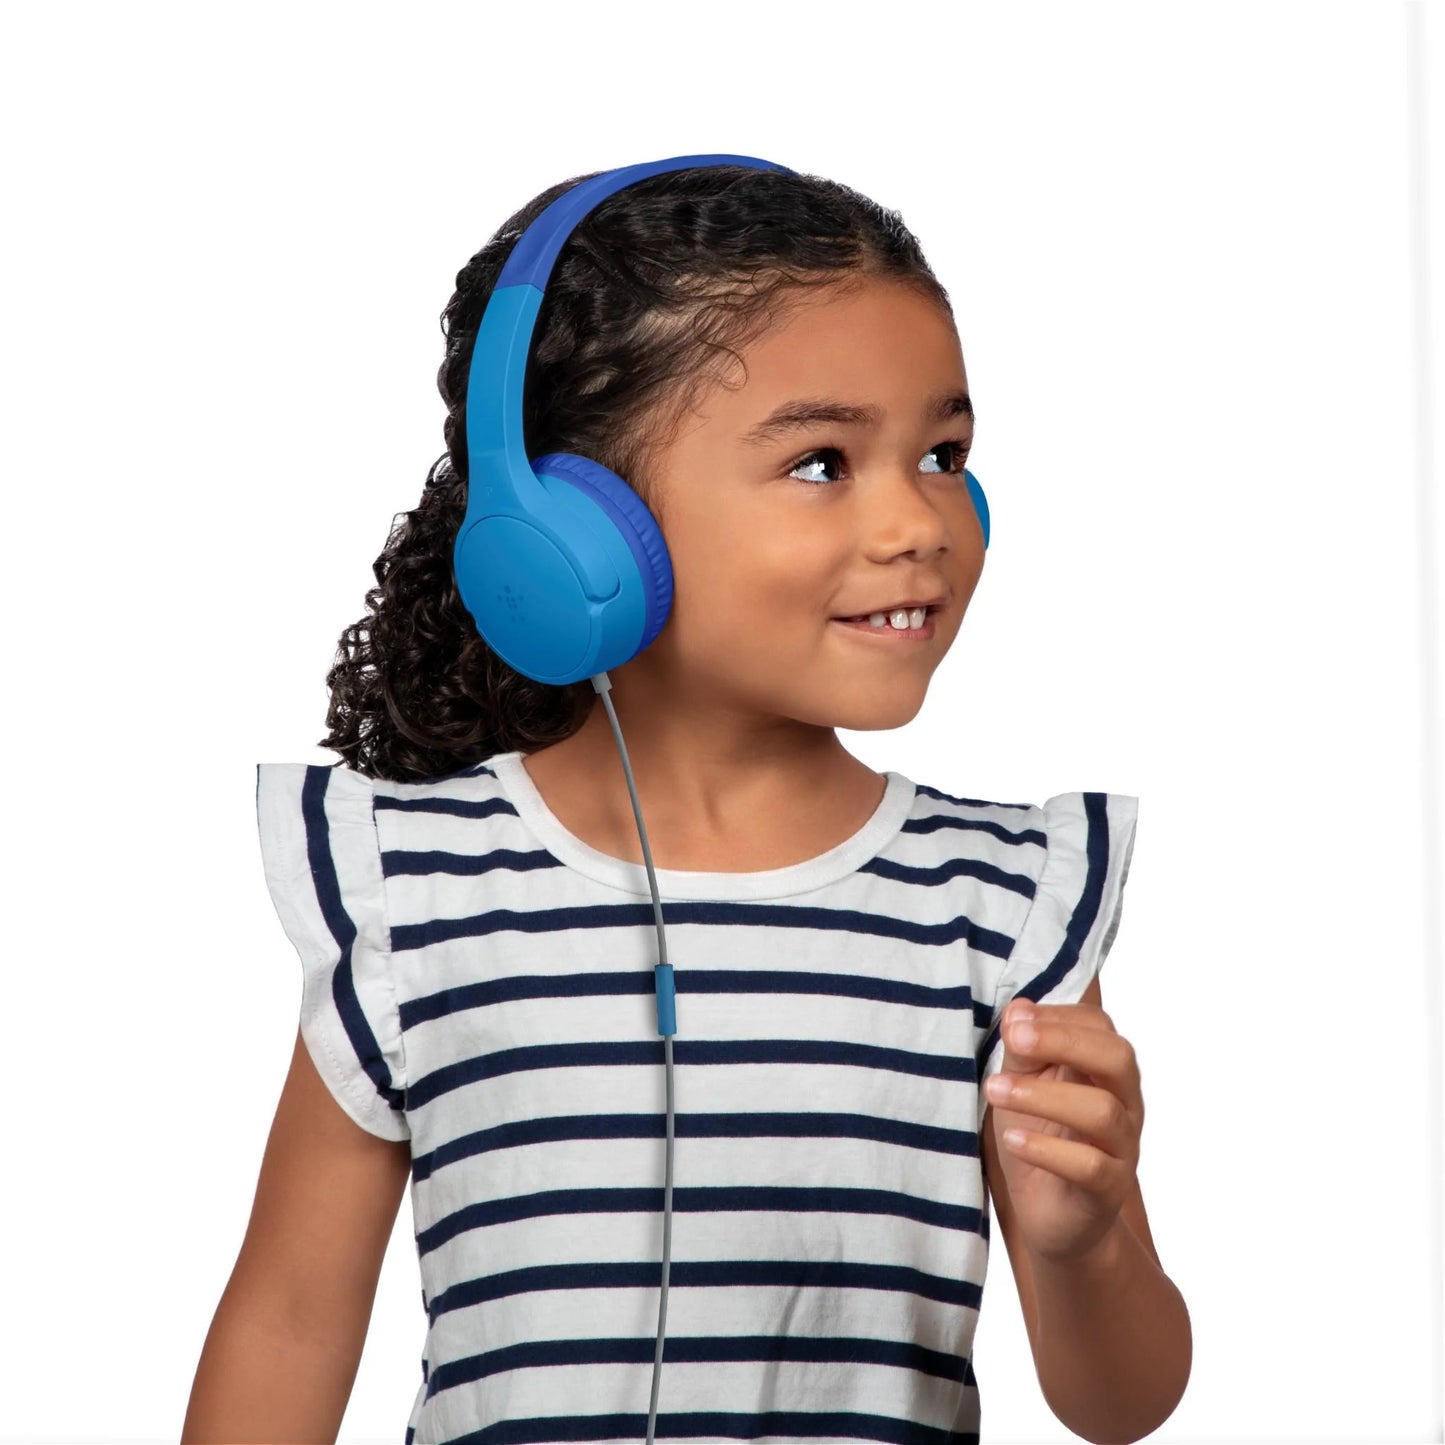 Belkin SOUDNFORM Mini Wired On-Ear Headphones for Kids (Blue)